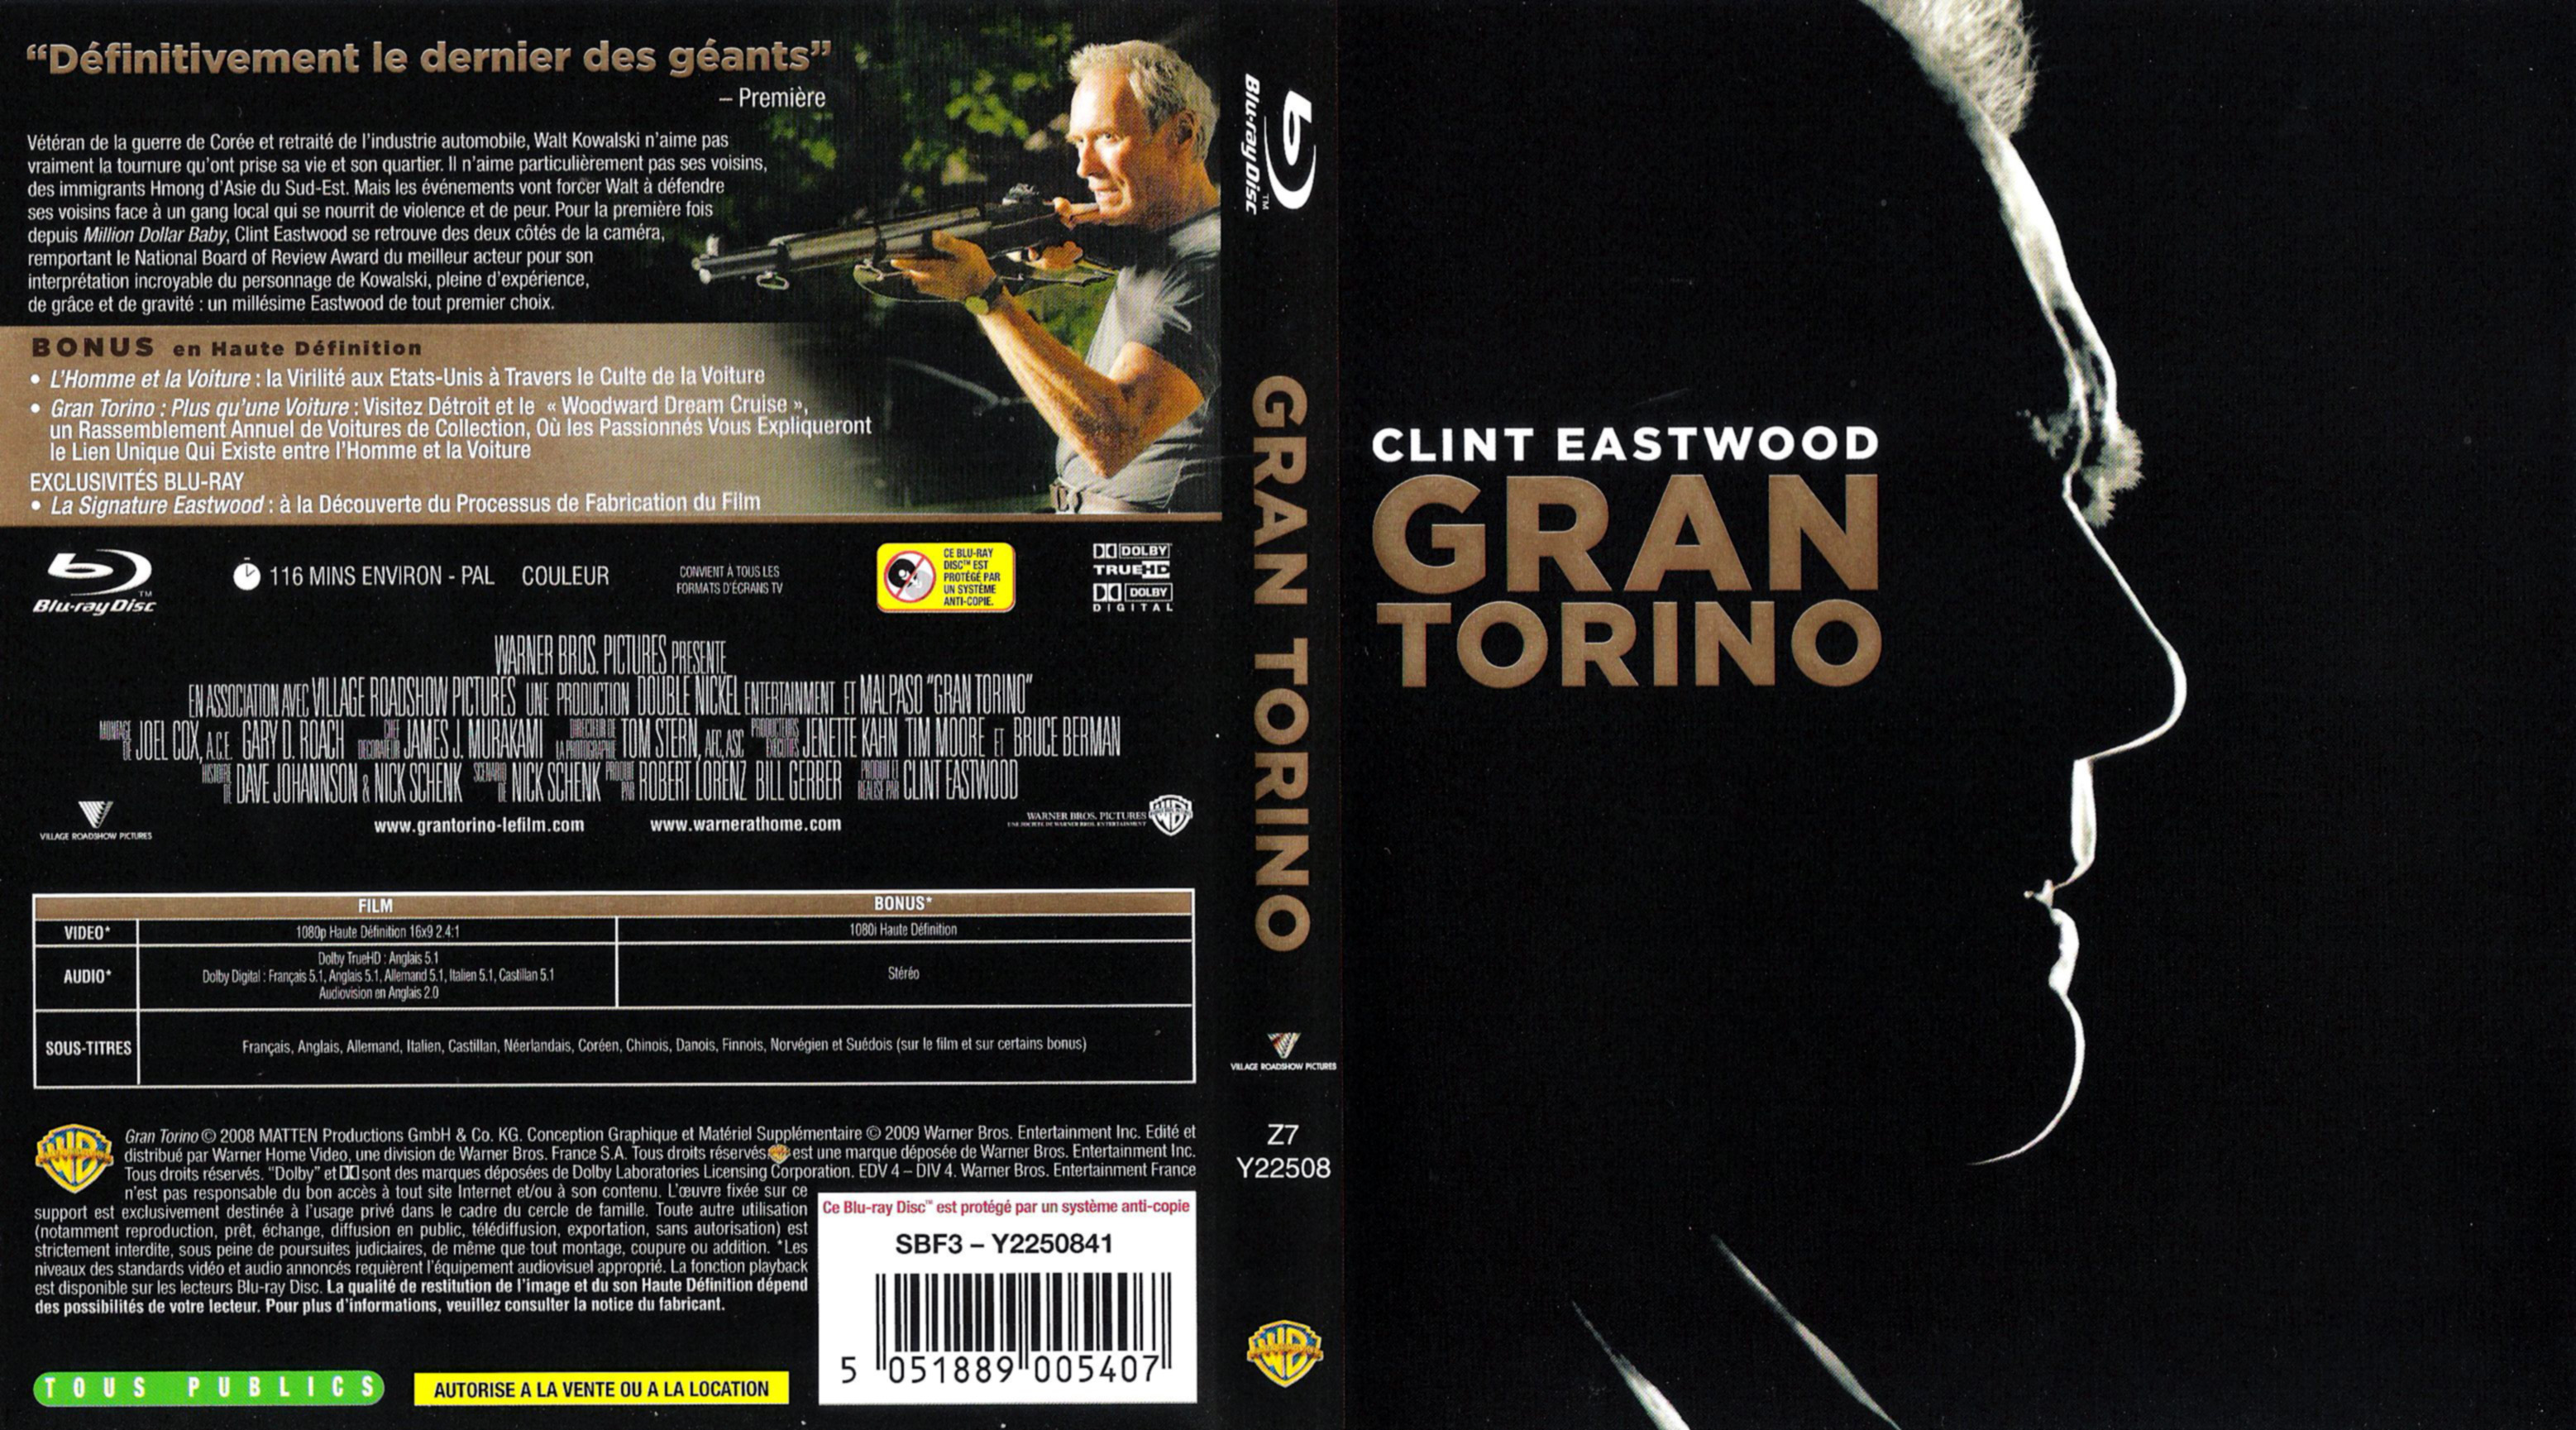 Jaquette DVD Gran torino (BLU-RAY) v2